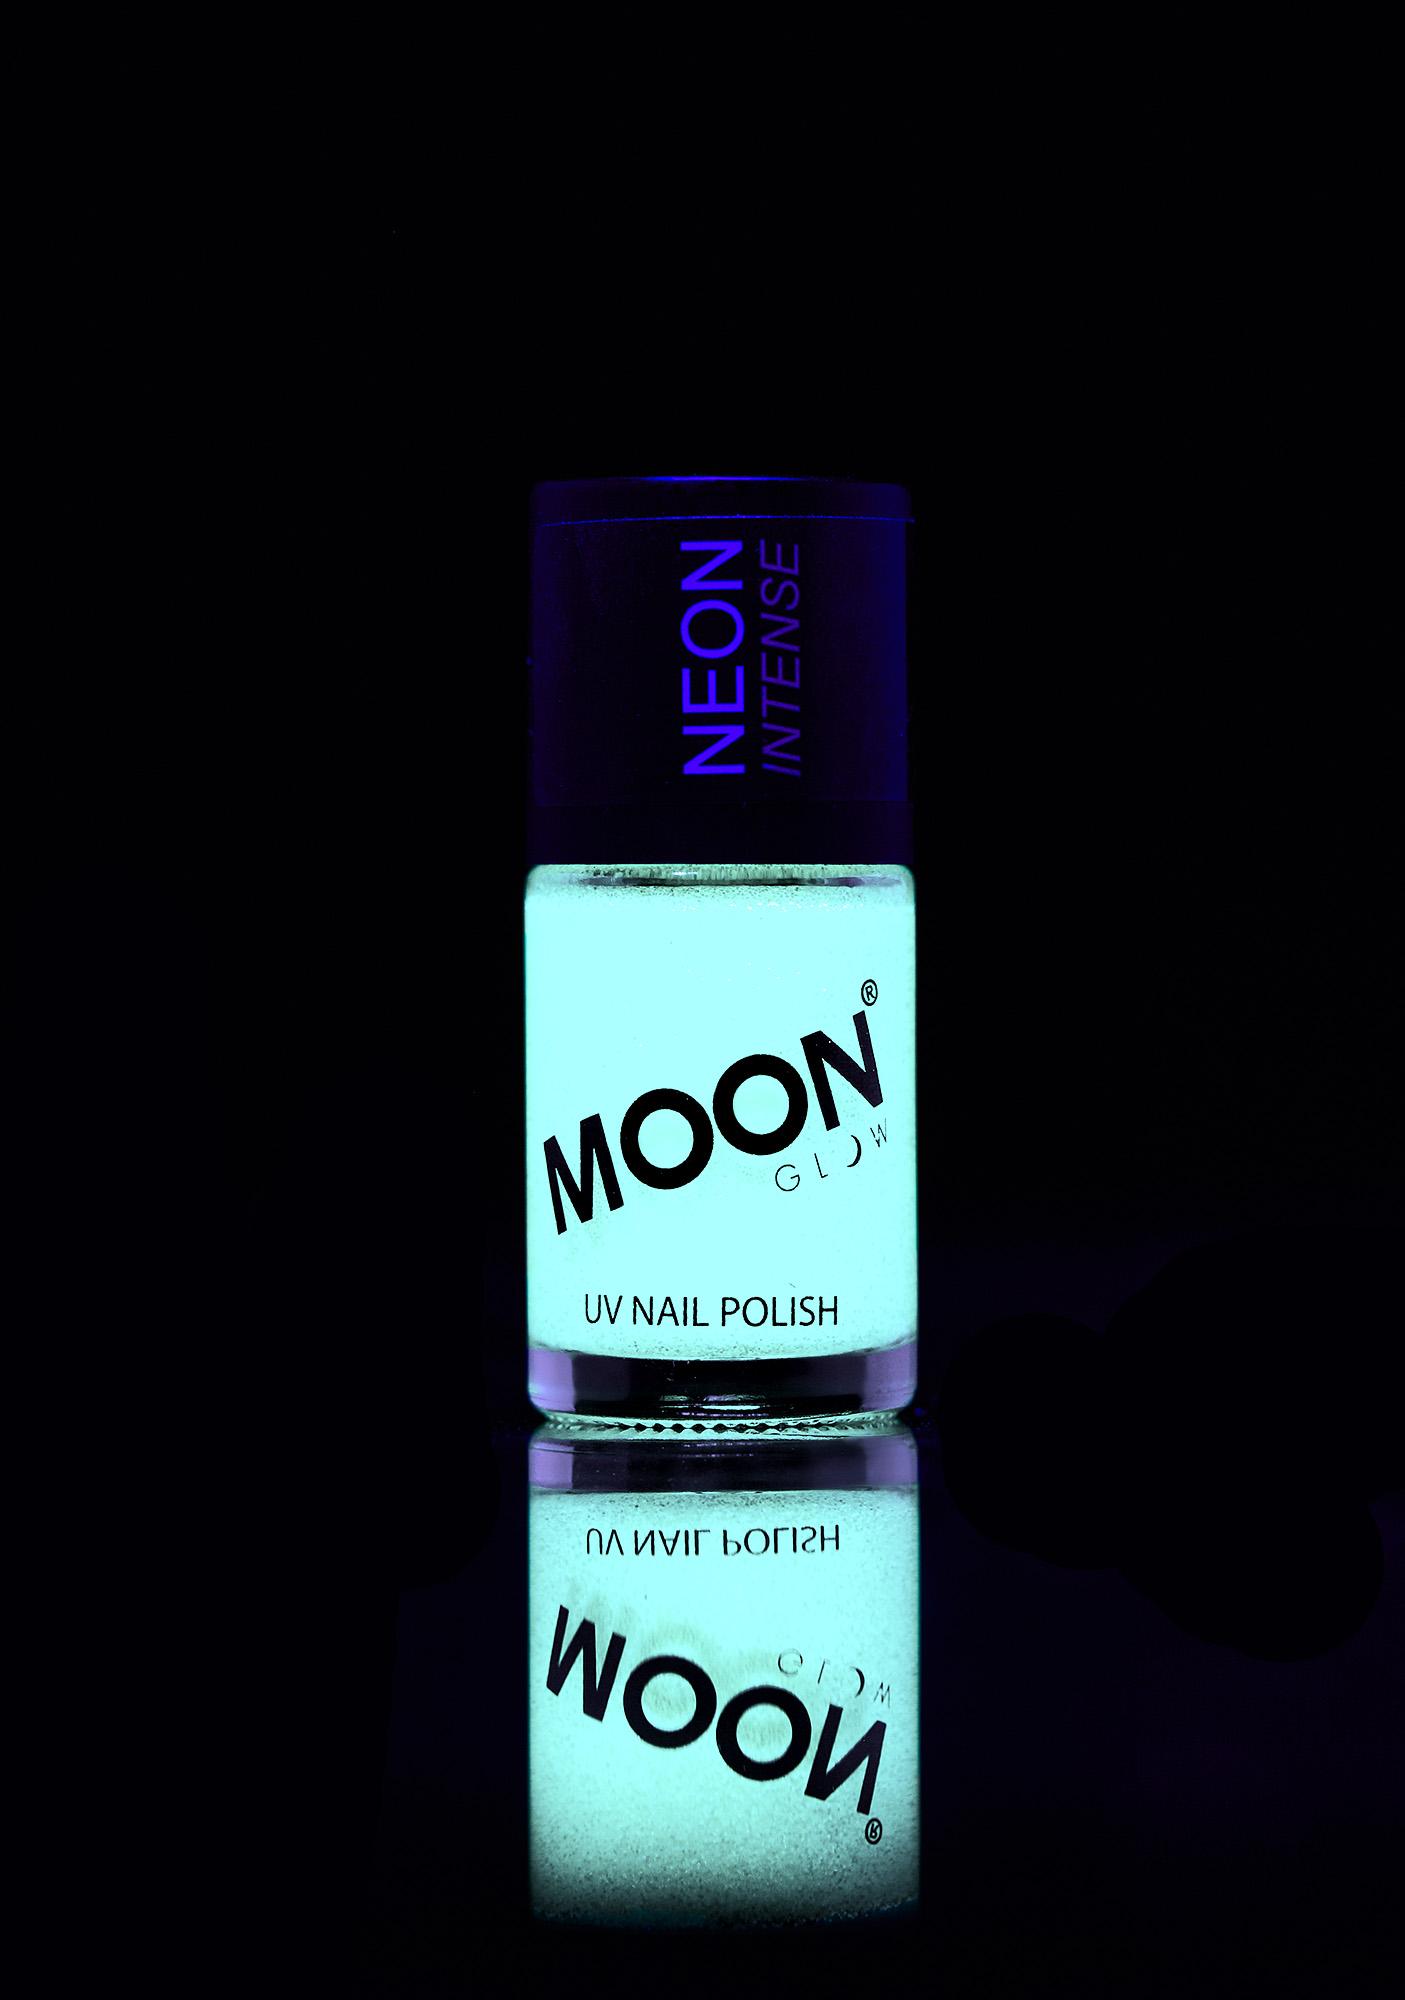 moon glow uv nail polish